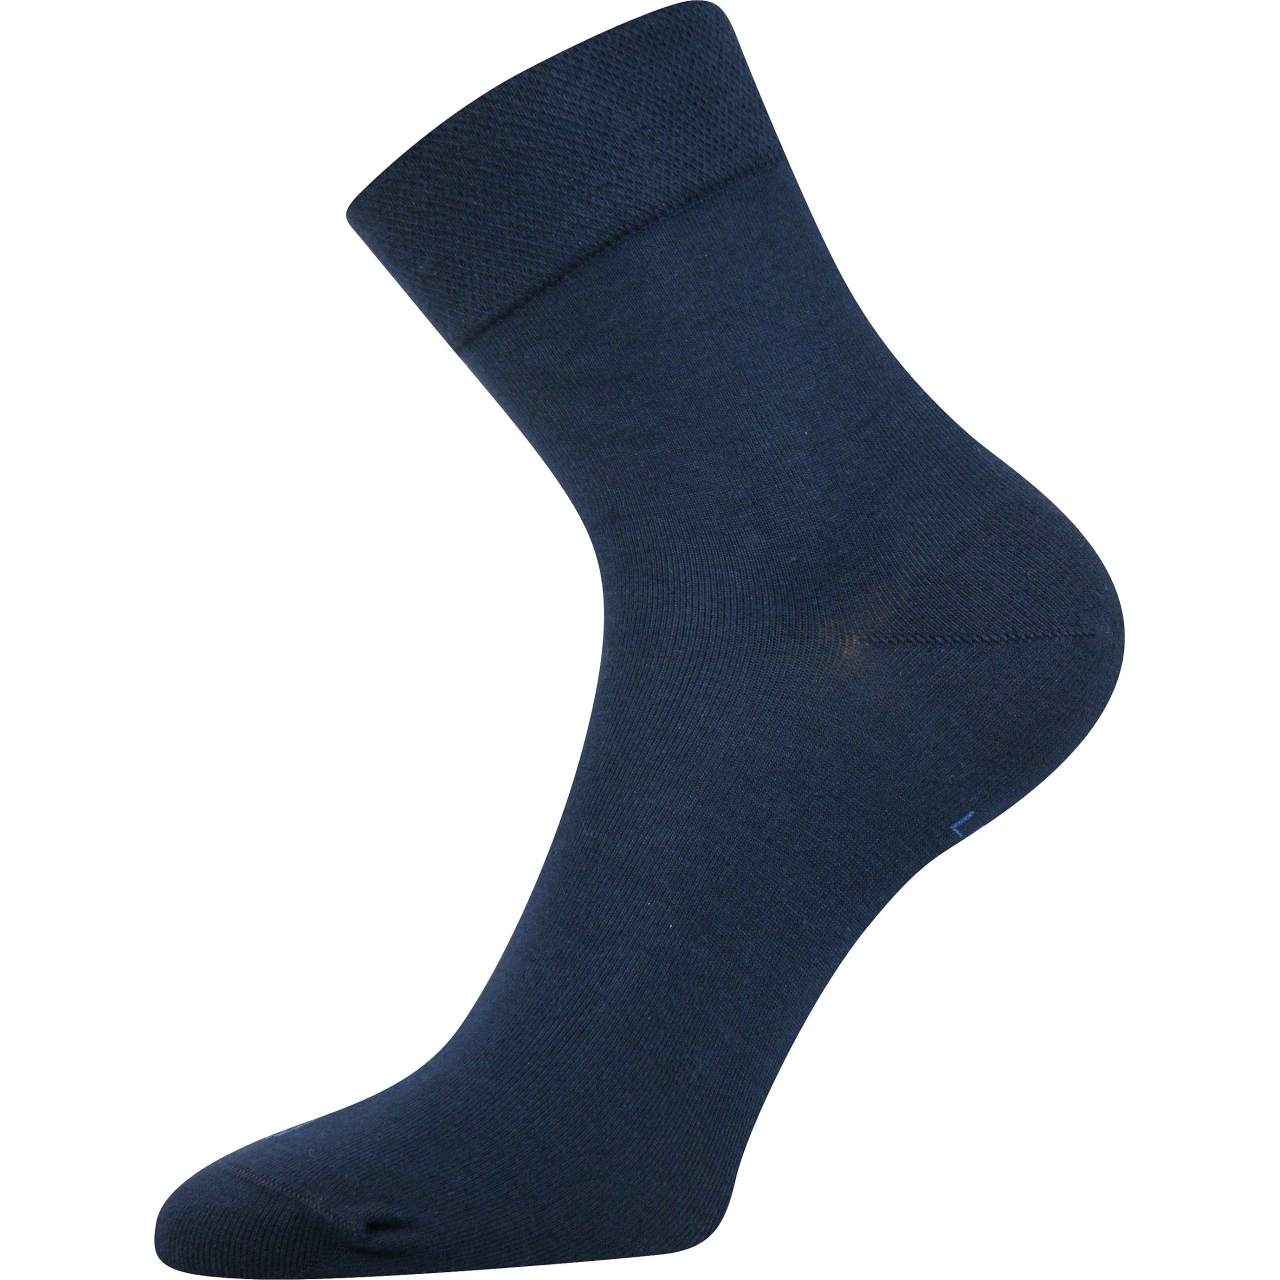 Ponožky dámské Lonka Fanera - tmavě modré, 35-38